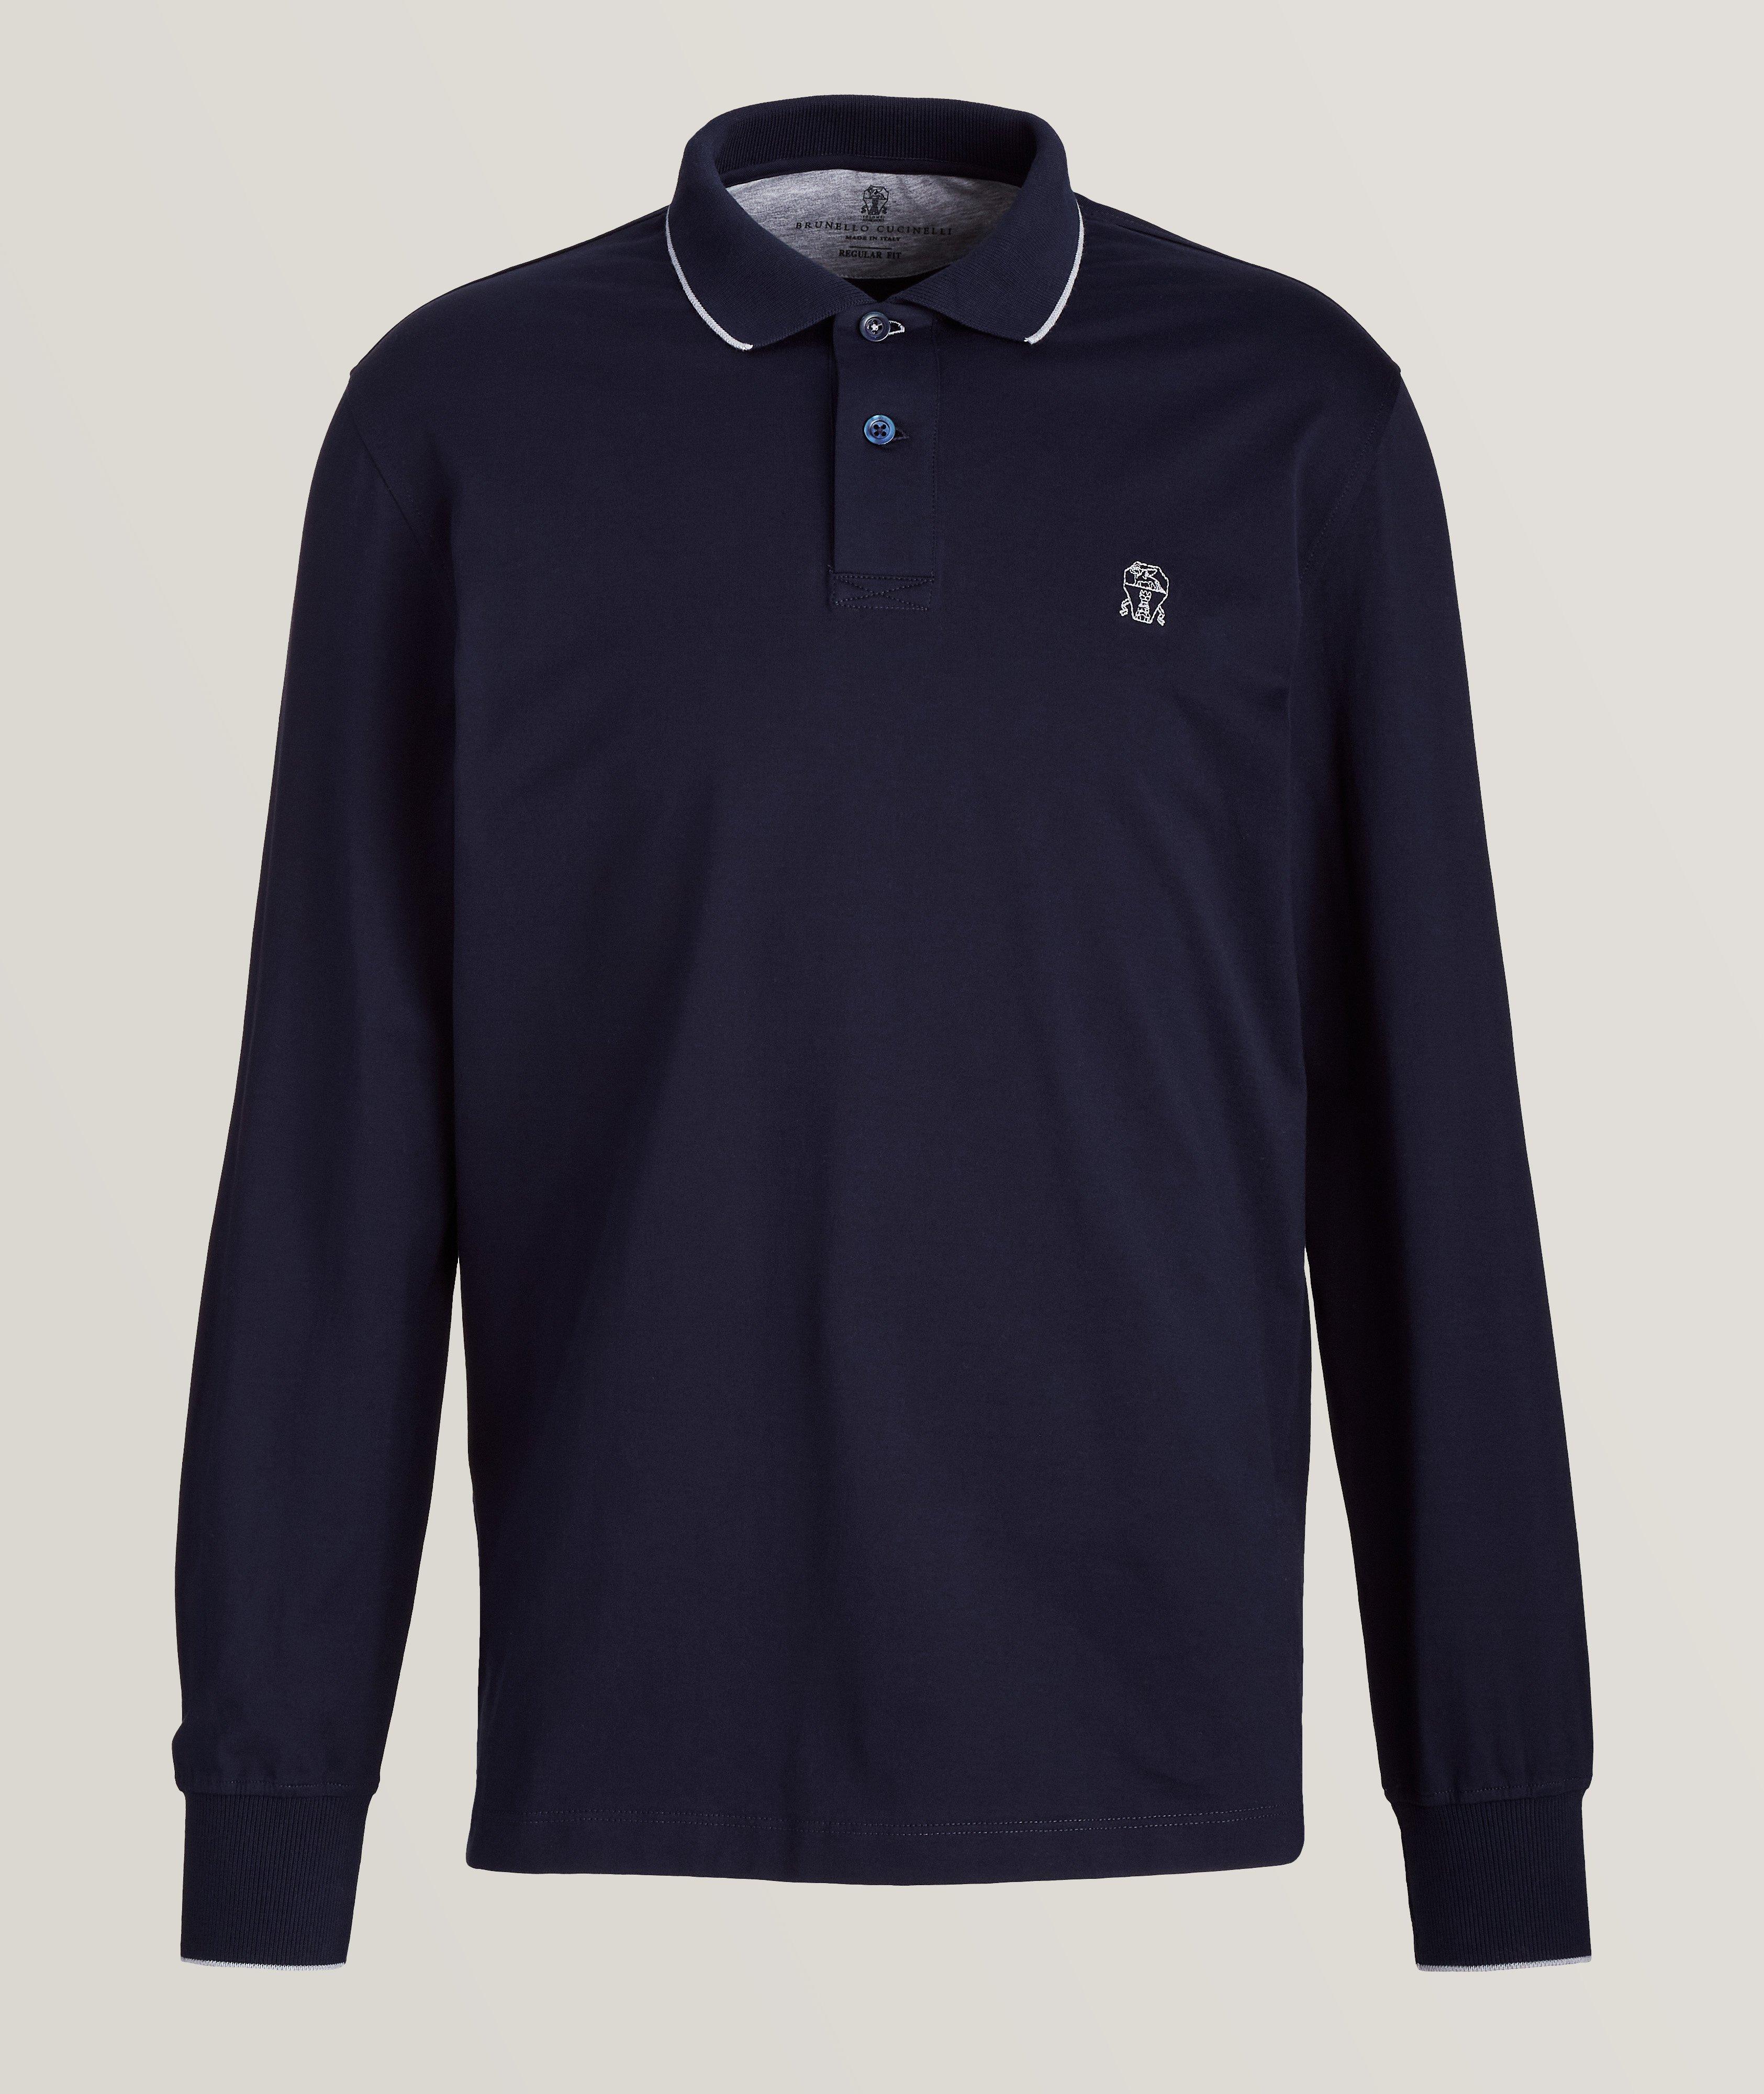 Polo en coton jersey avec logo image 0